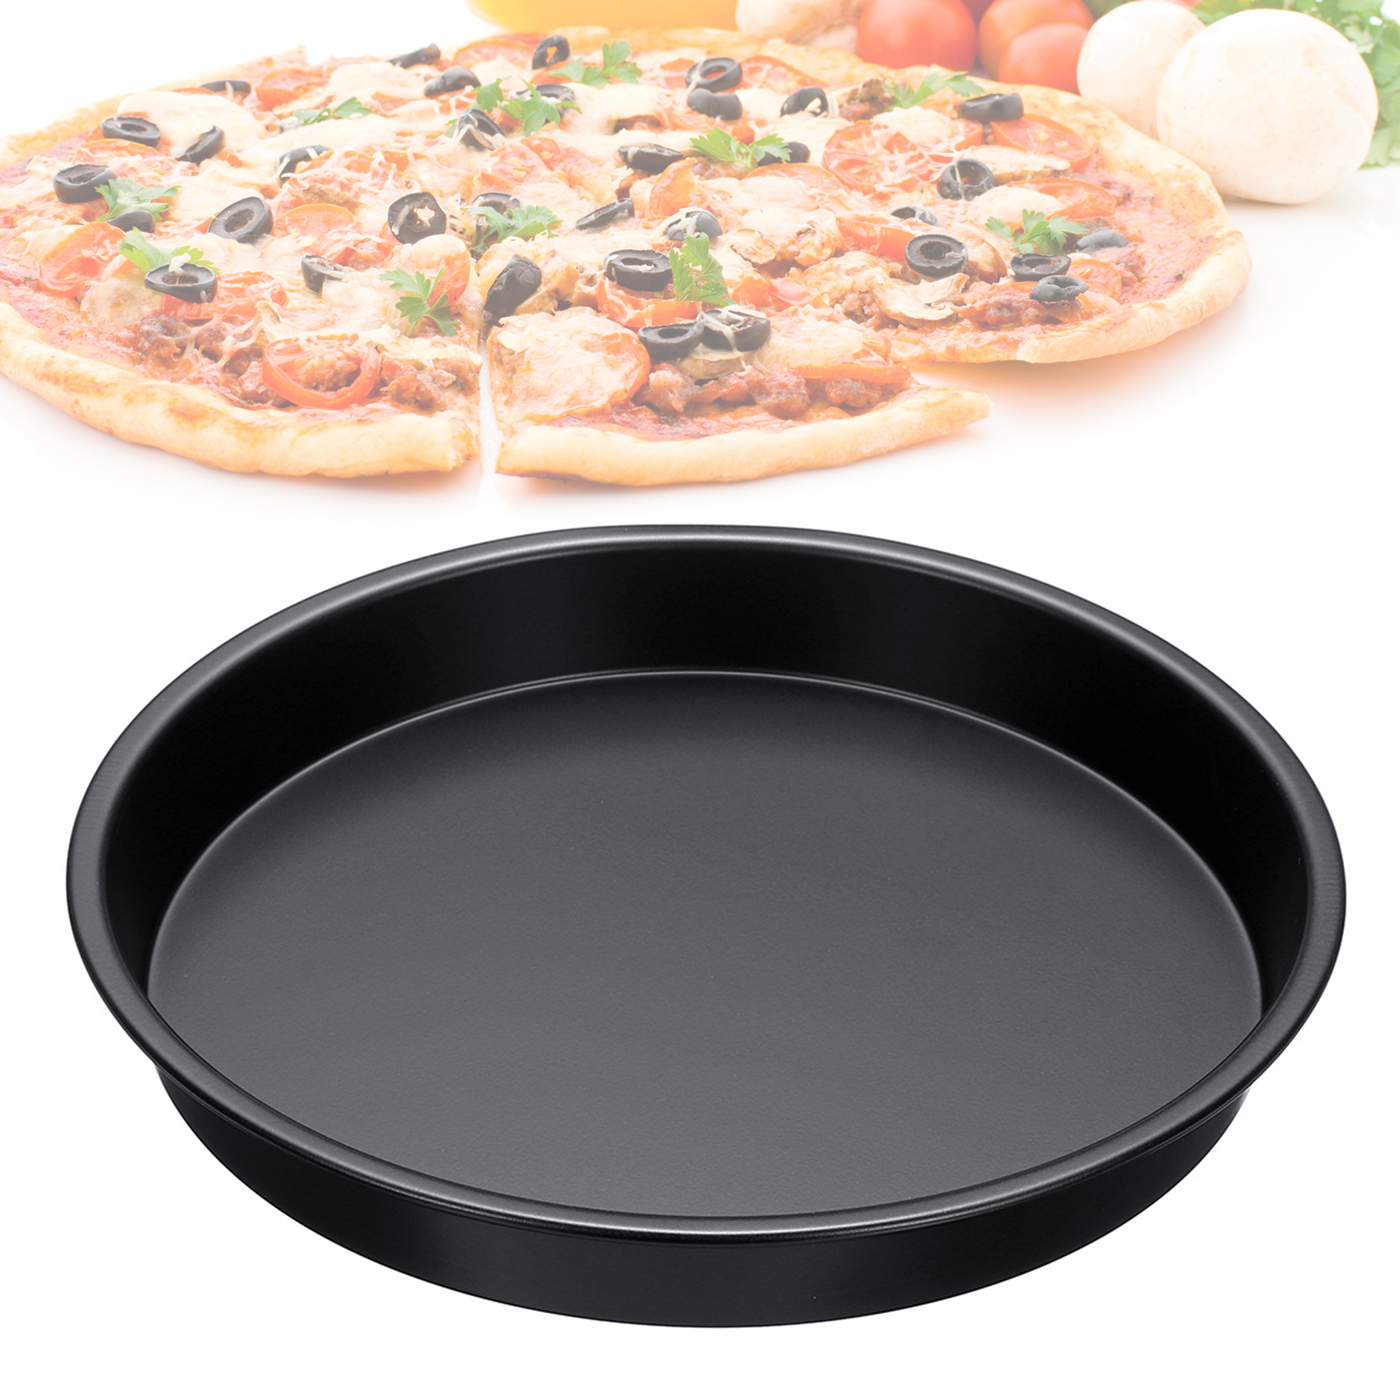 фото форма для выпечки пиццы фото 35